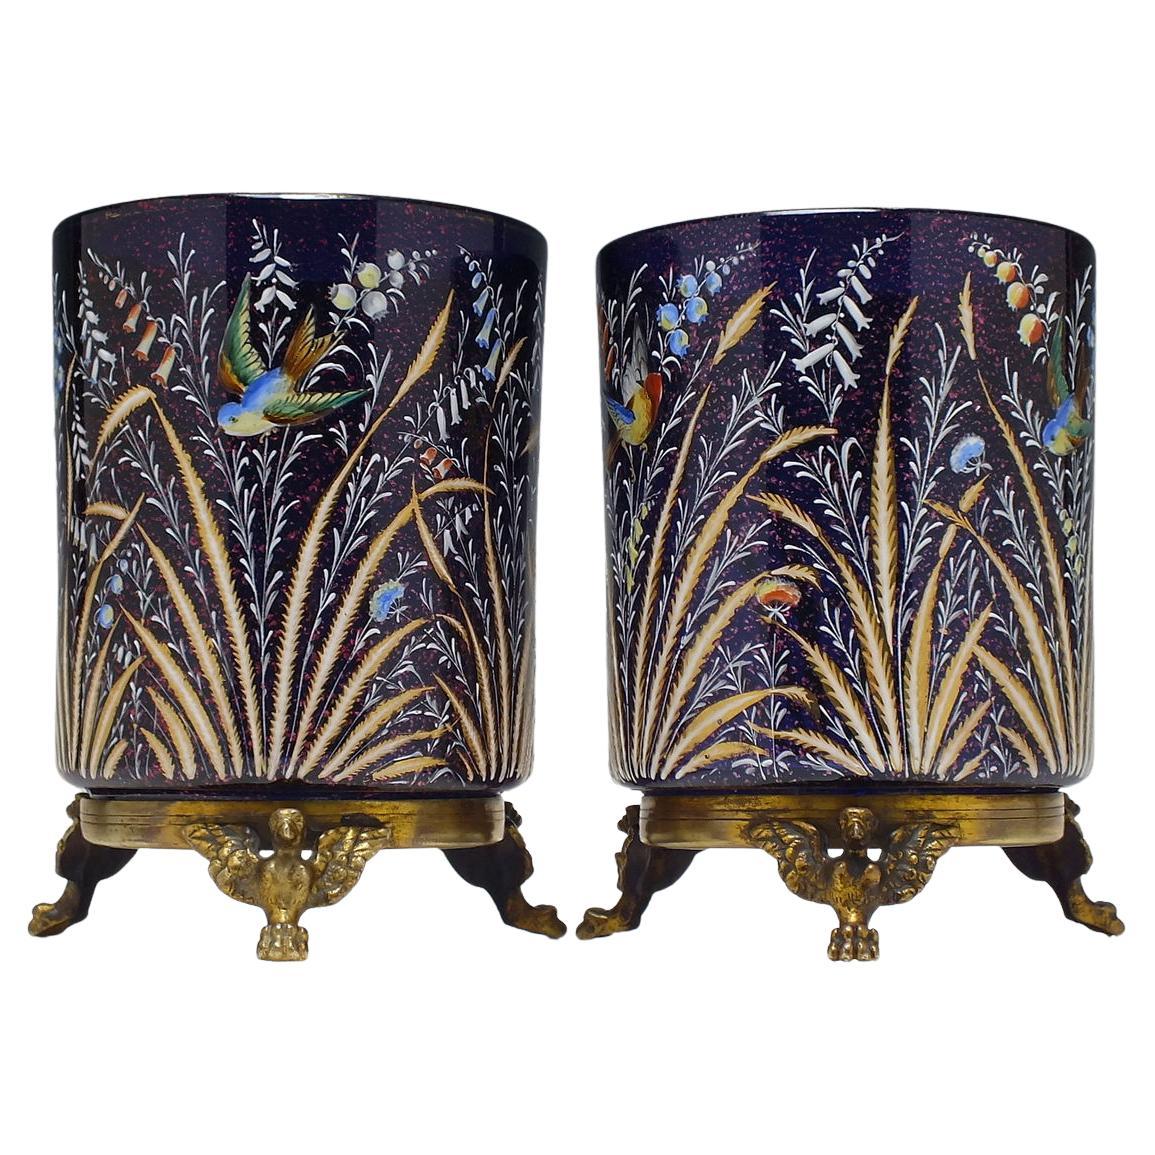 Paar Moser-Vasen in Museumsqualität, polychrom emailliert, 19. Jahrhundert, um 1890